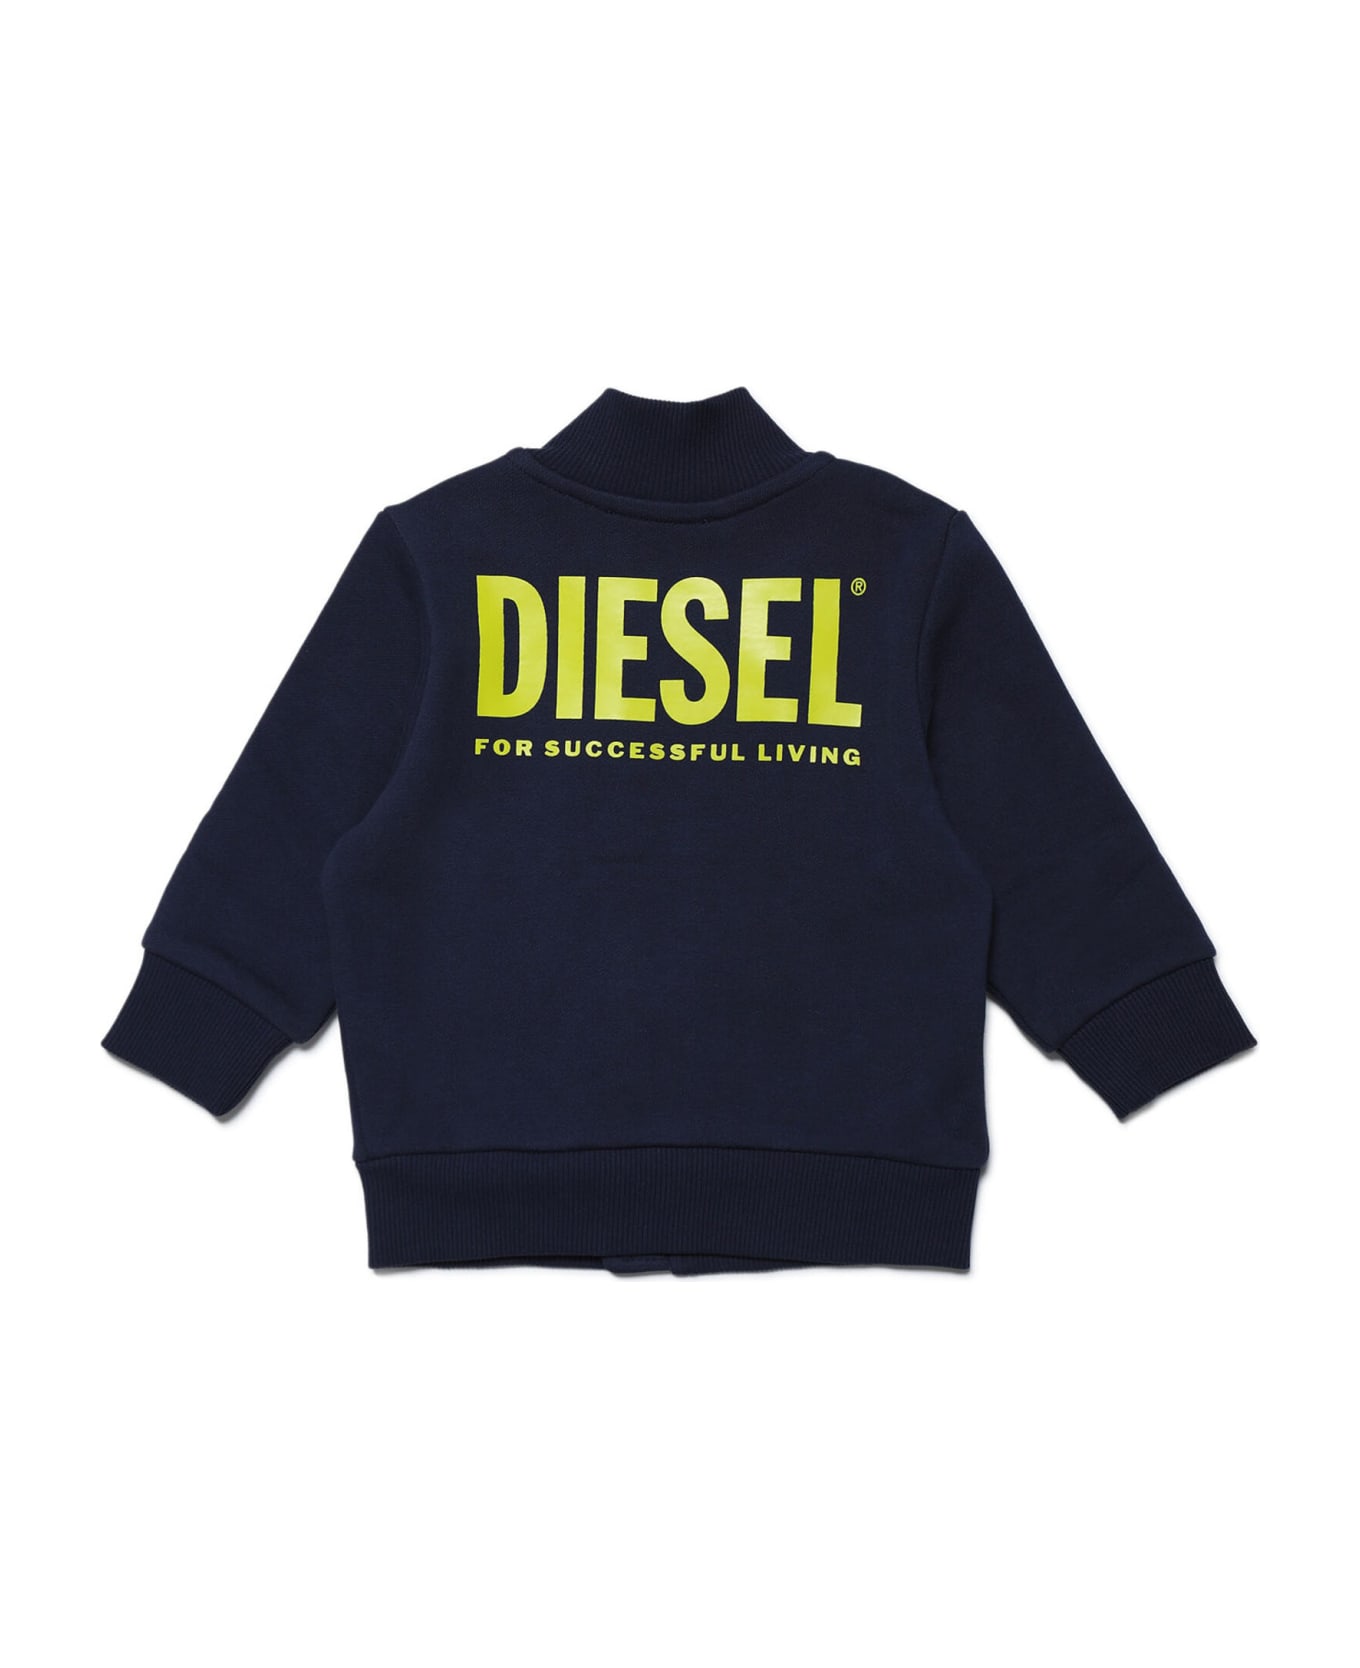 Diesel Sgeffyb Sweat-shirt Diesel - Peacoat